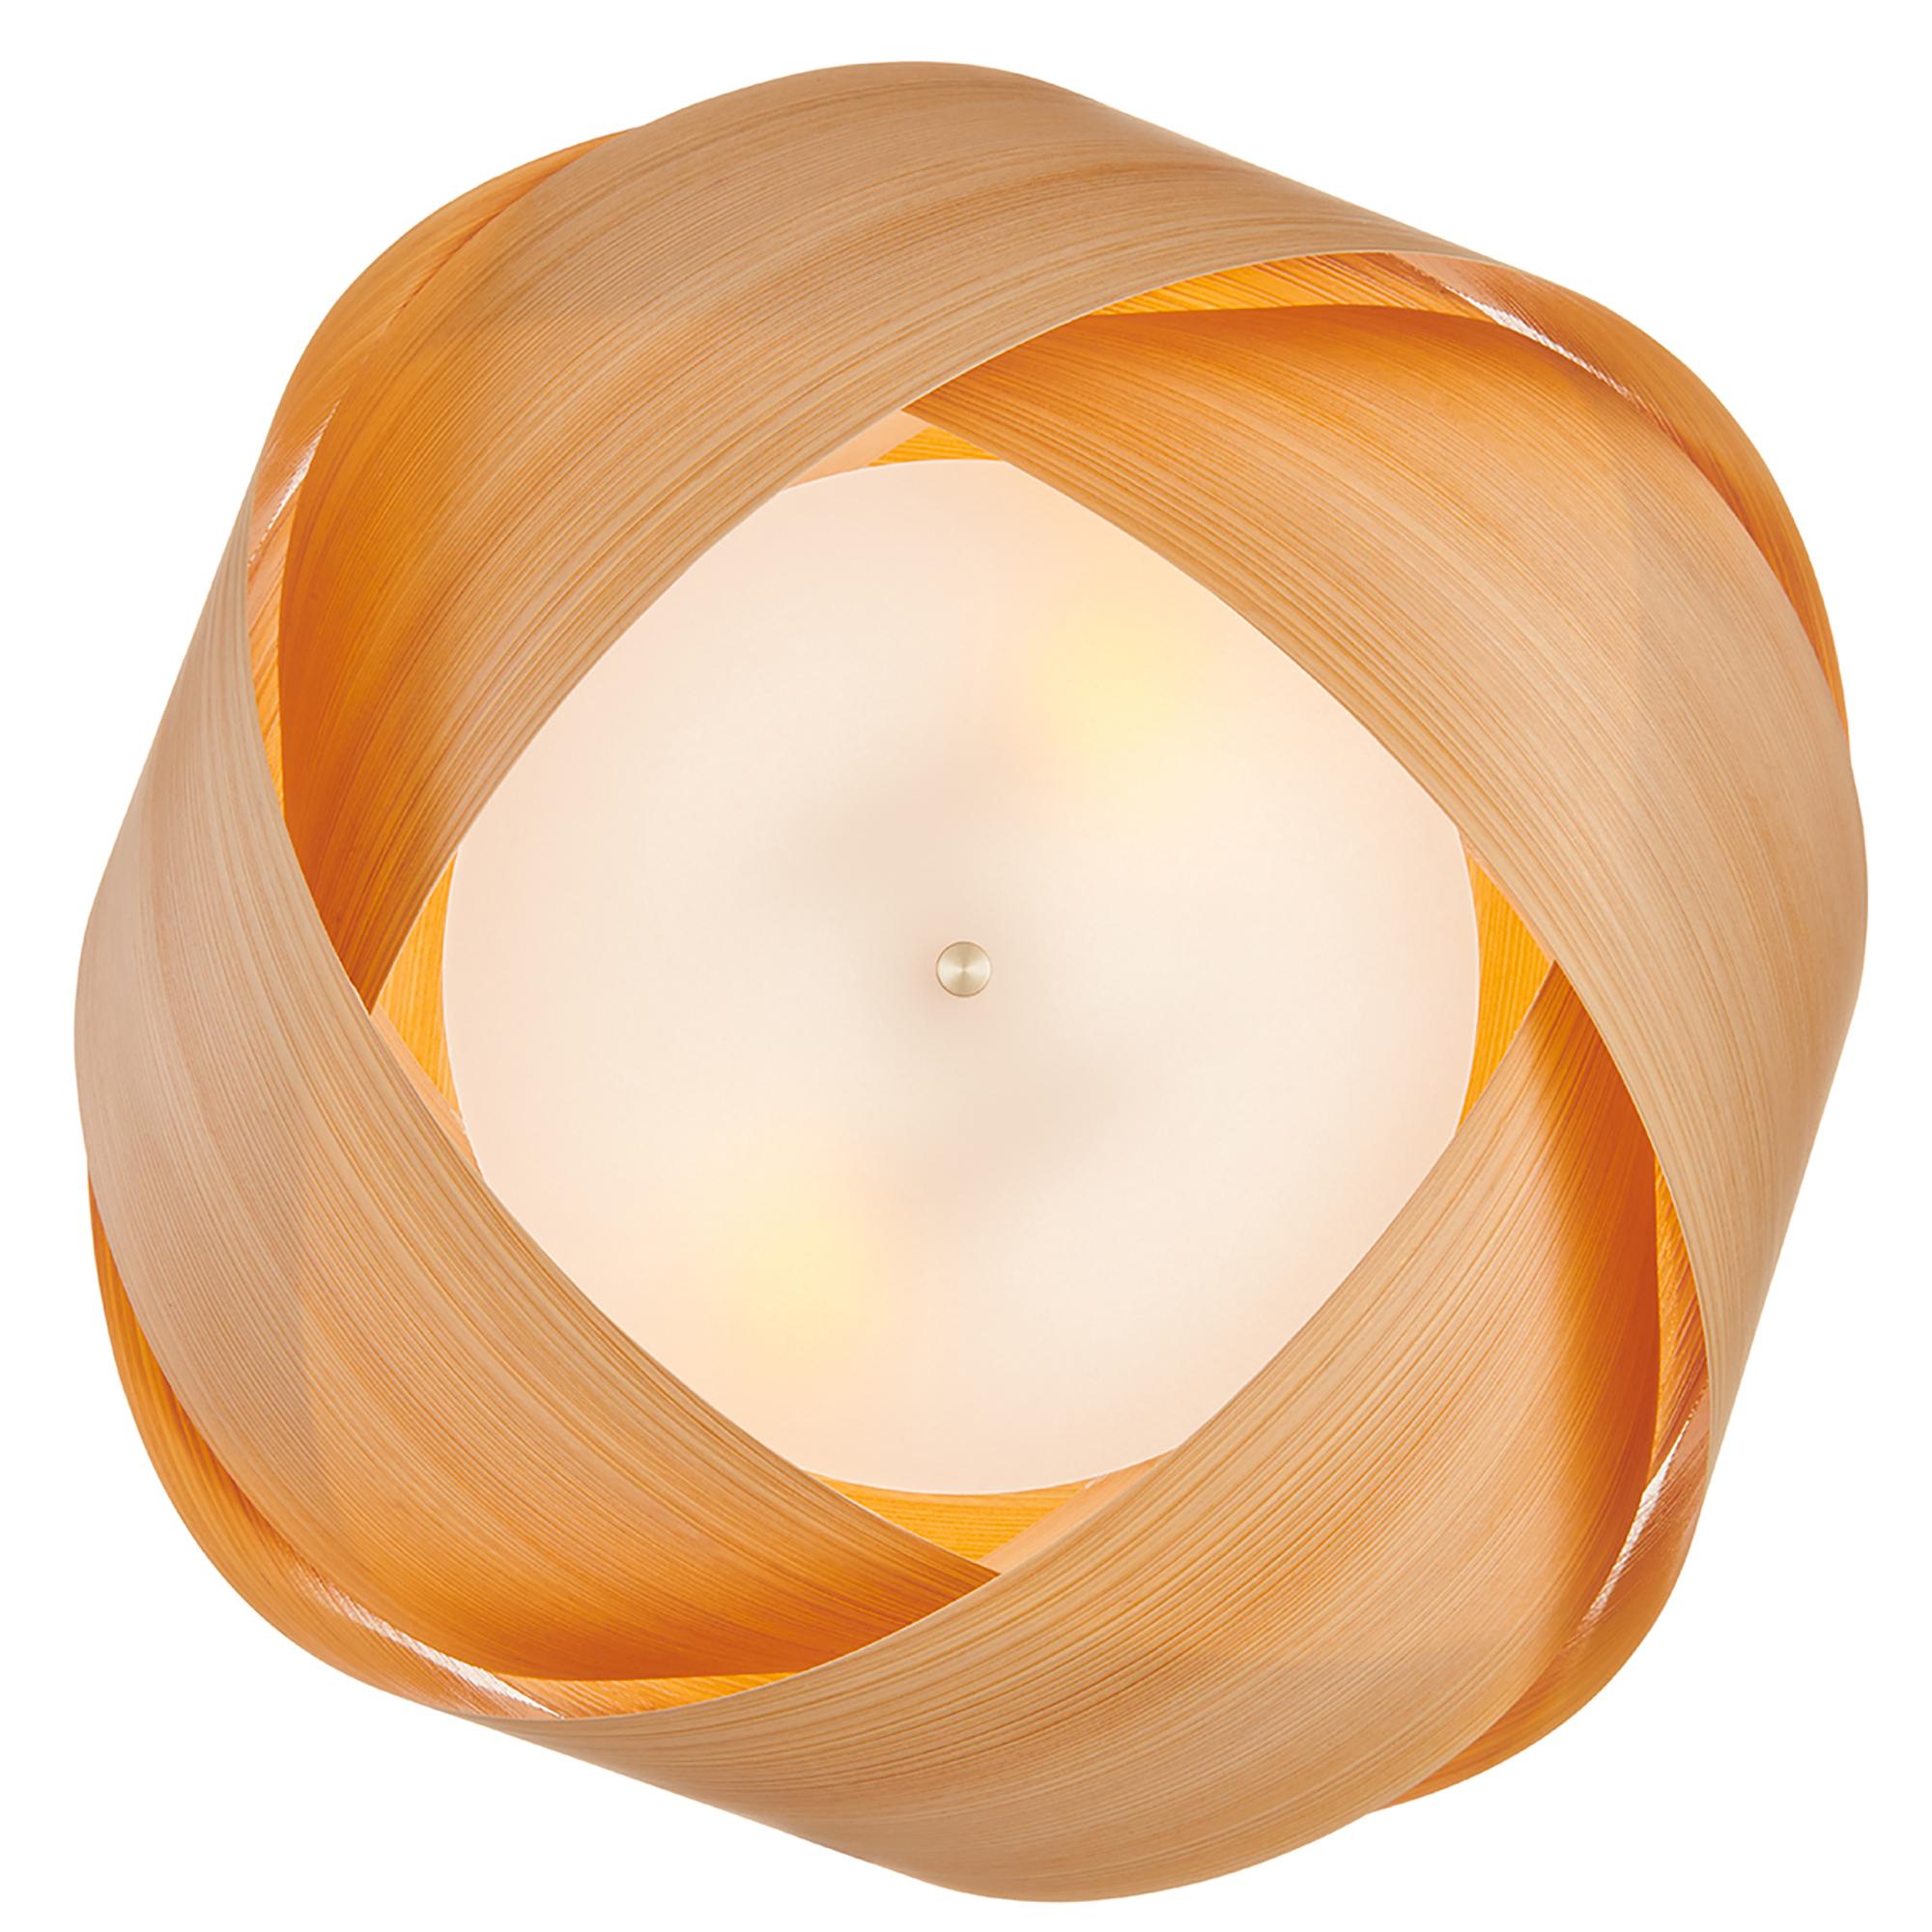 Frosted Scandinavian Design natural wood veneer chandelier pendant